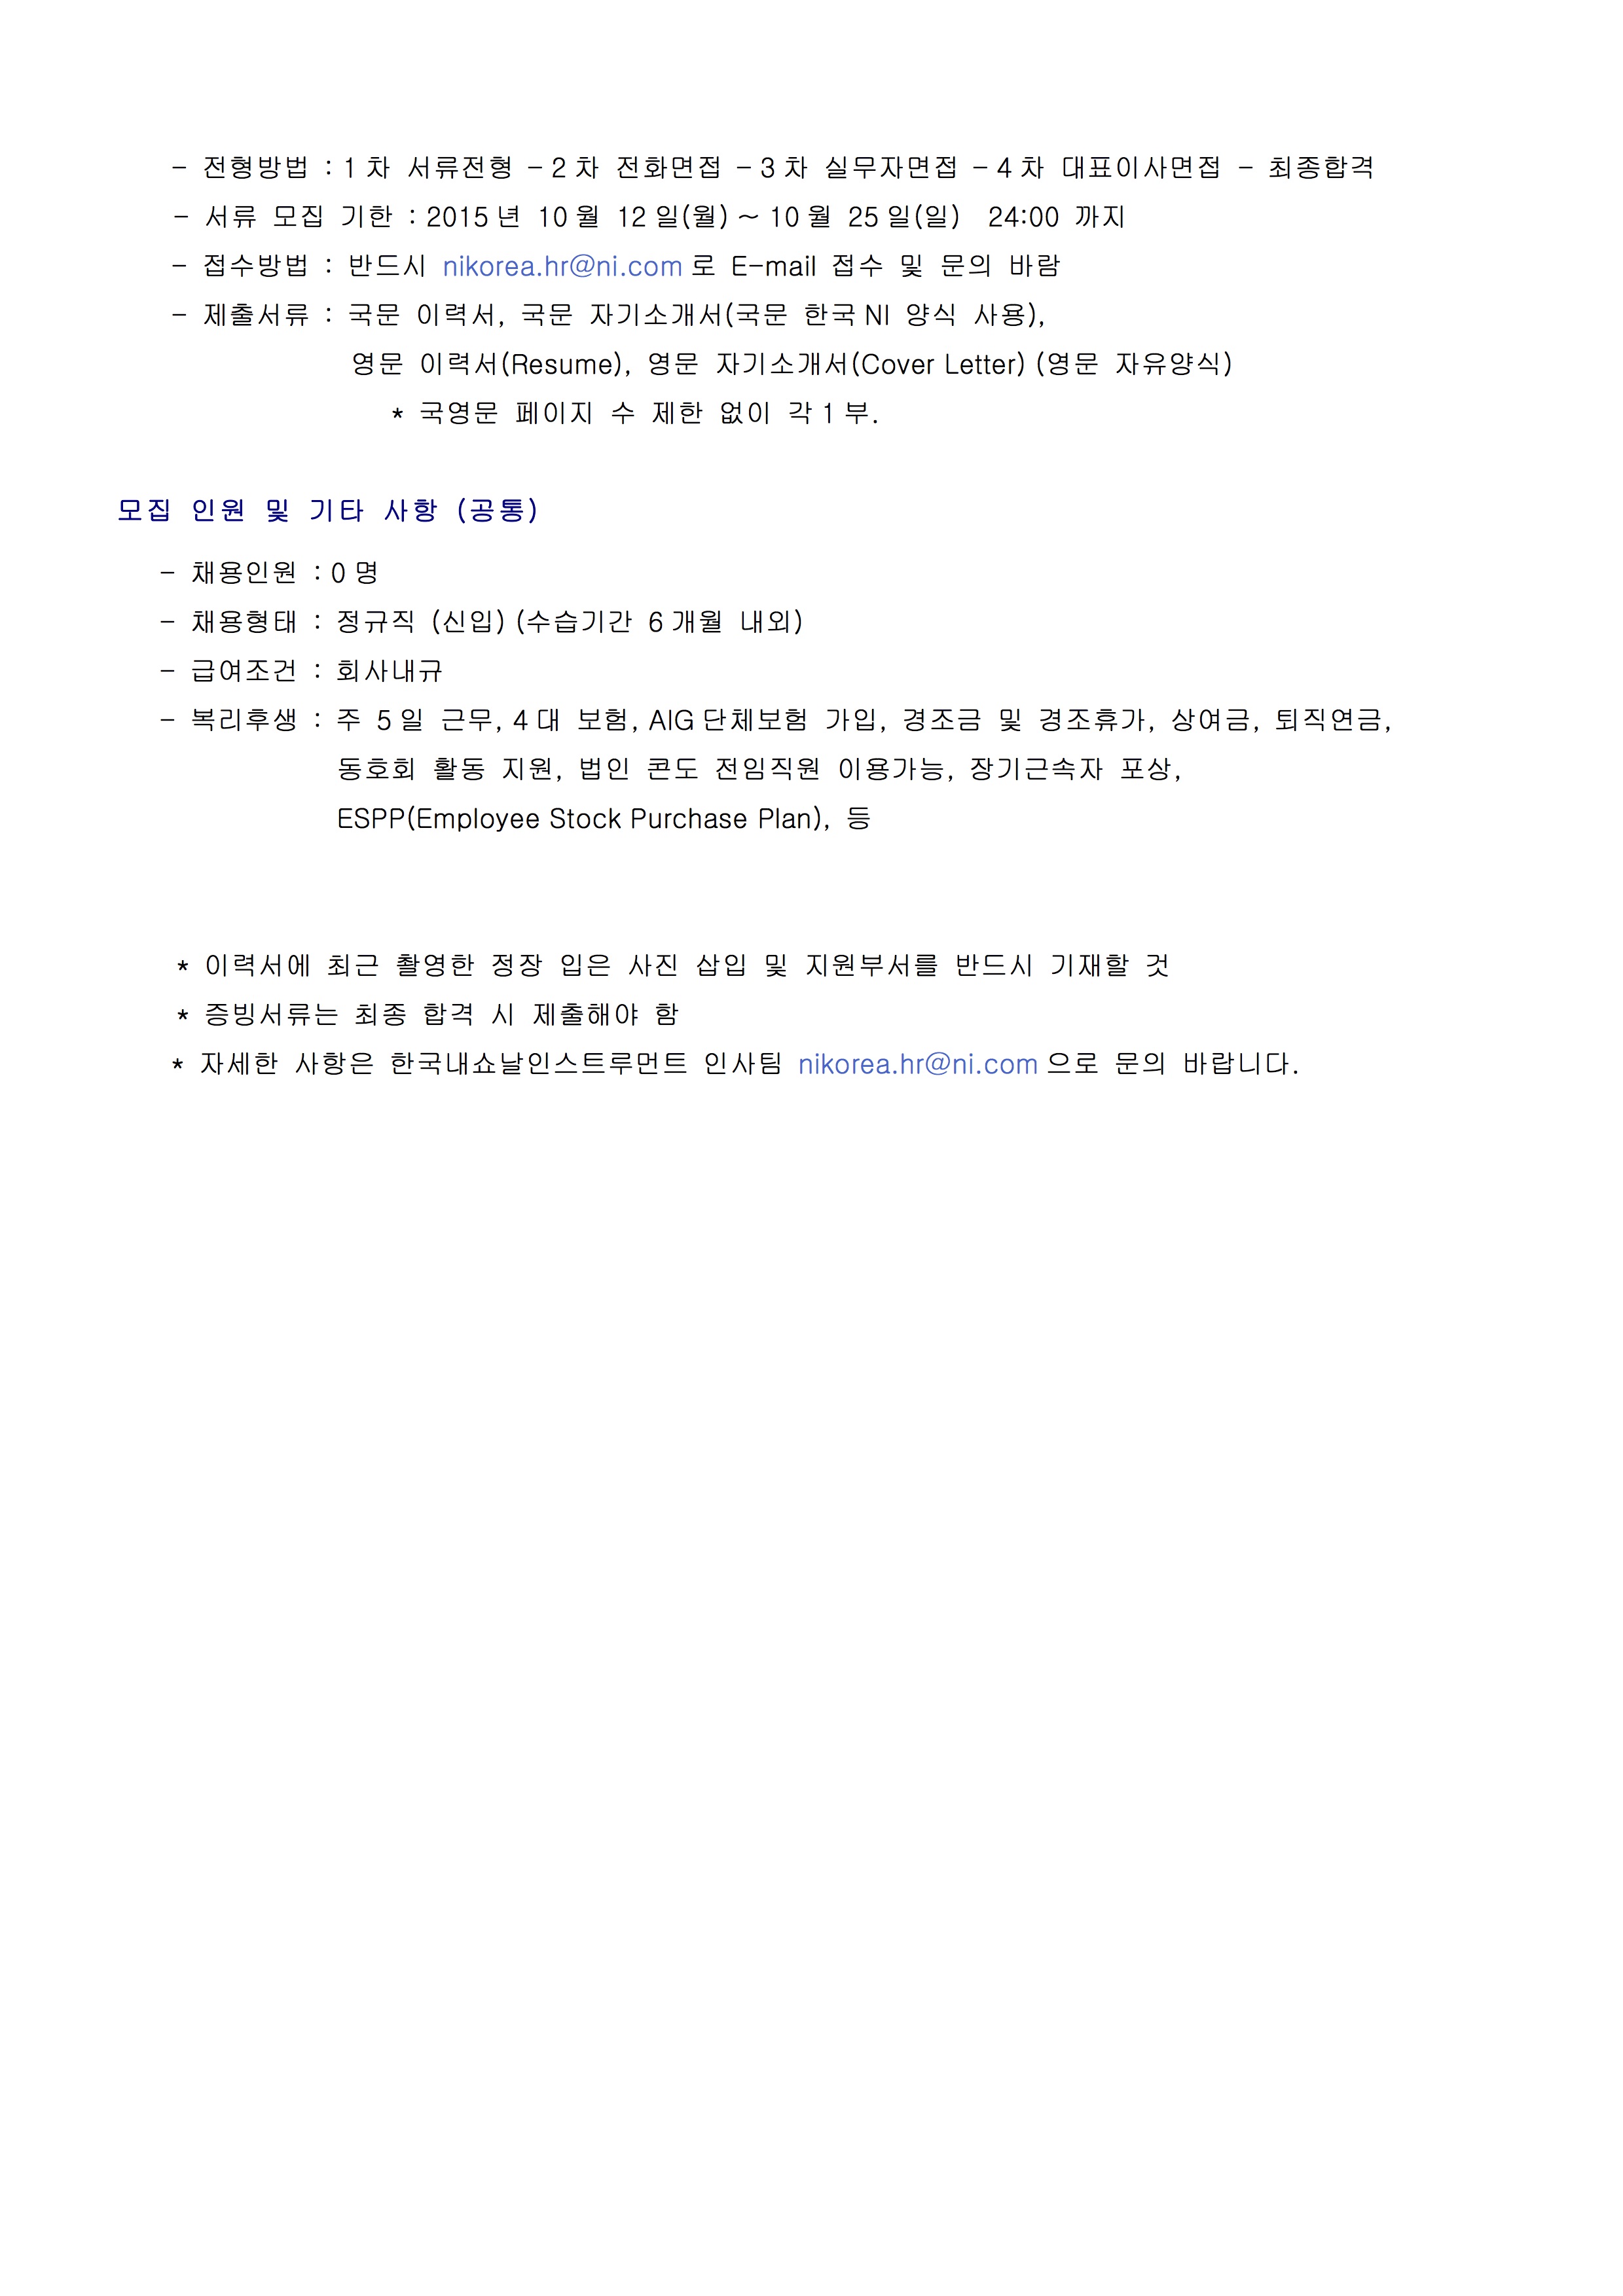 한국NI AE 채용공고_201510-3.jpg